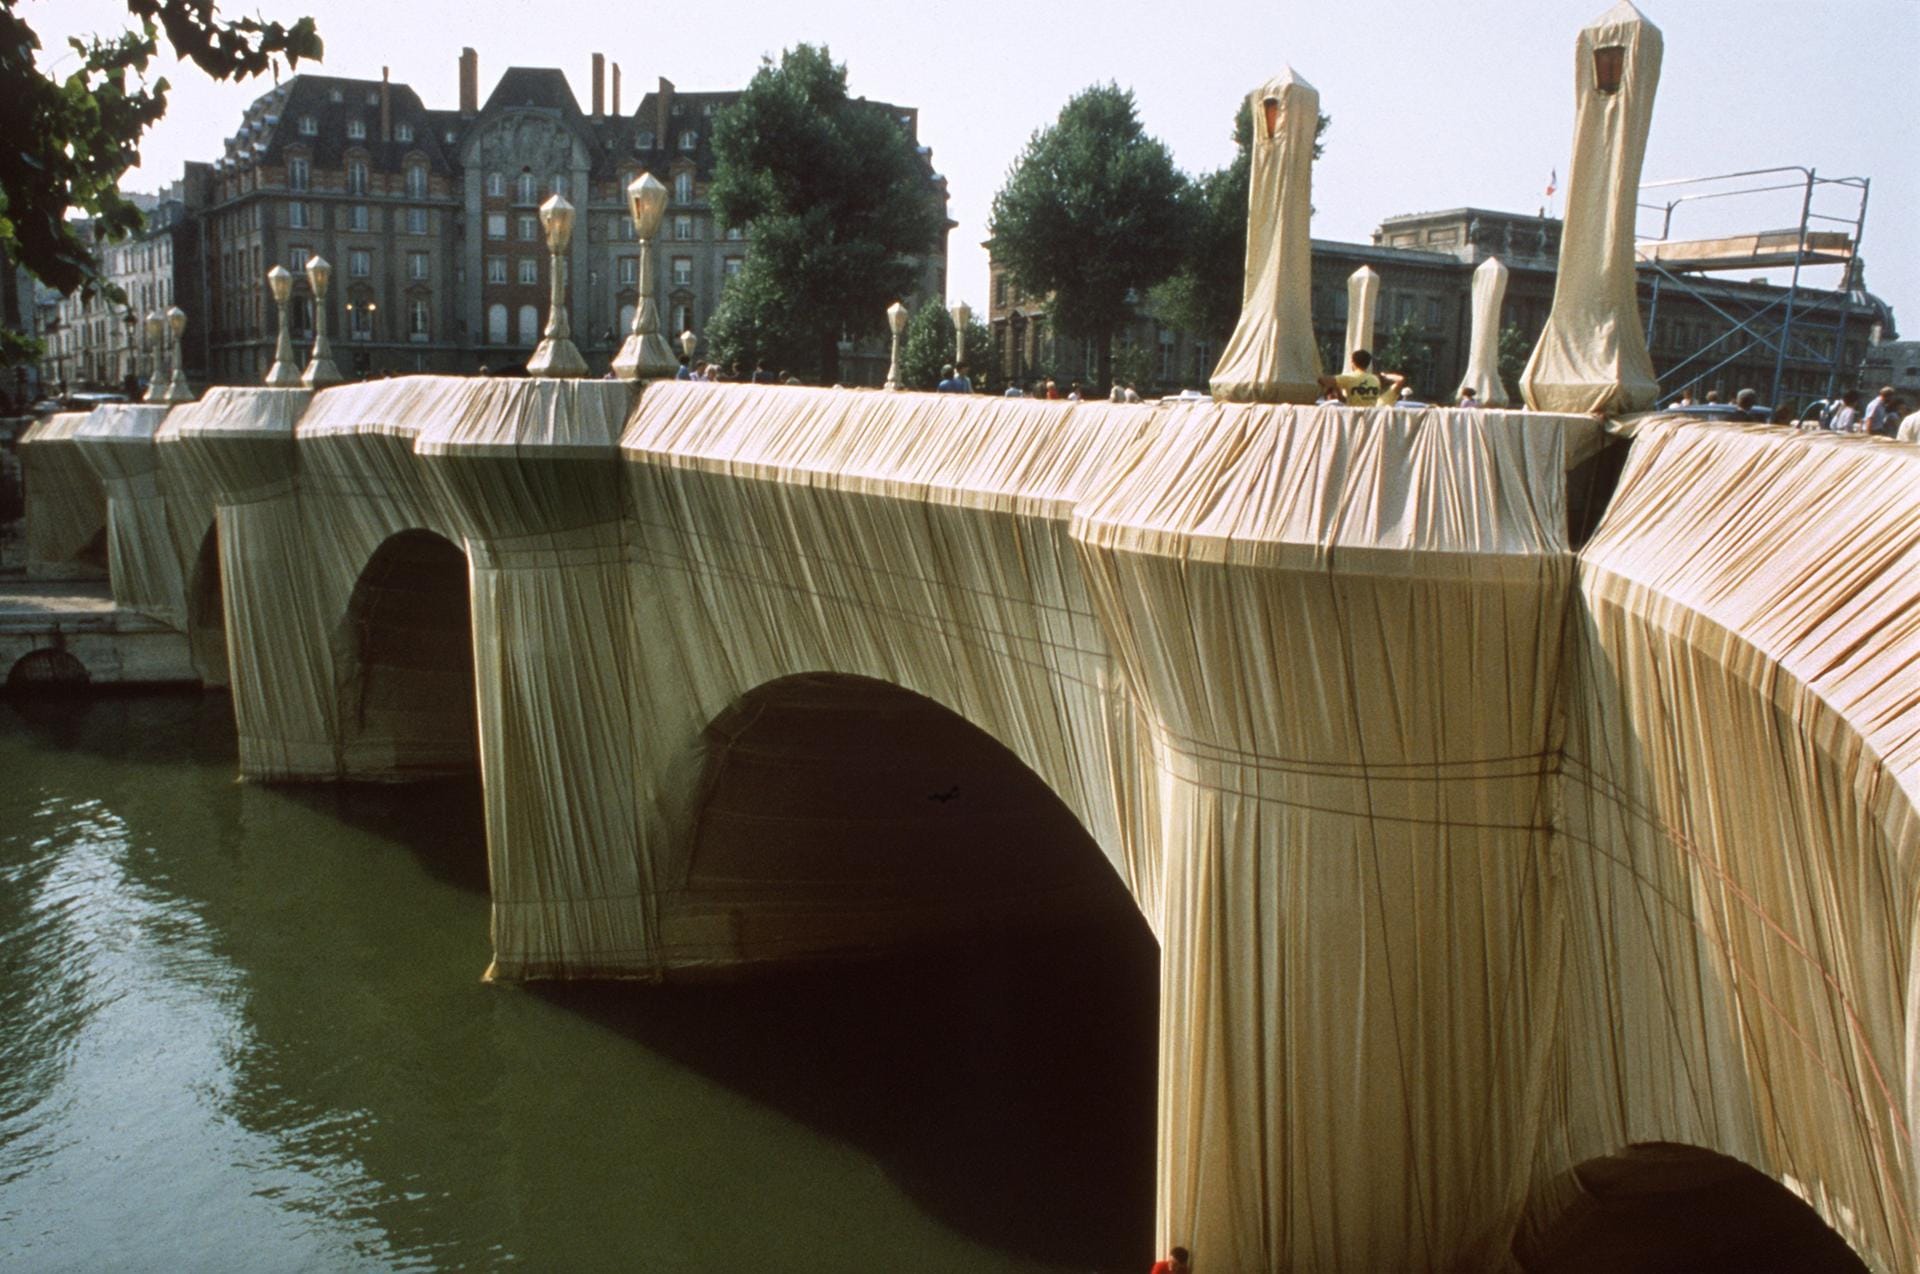 1985 verhüllten 300 Arbeiter den Pont Neuf in Paris. Sie entfalteten 40.876 Quadratmeter eines Polyamidgewebes, das wie goldene Seide aussah.